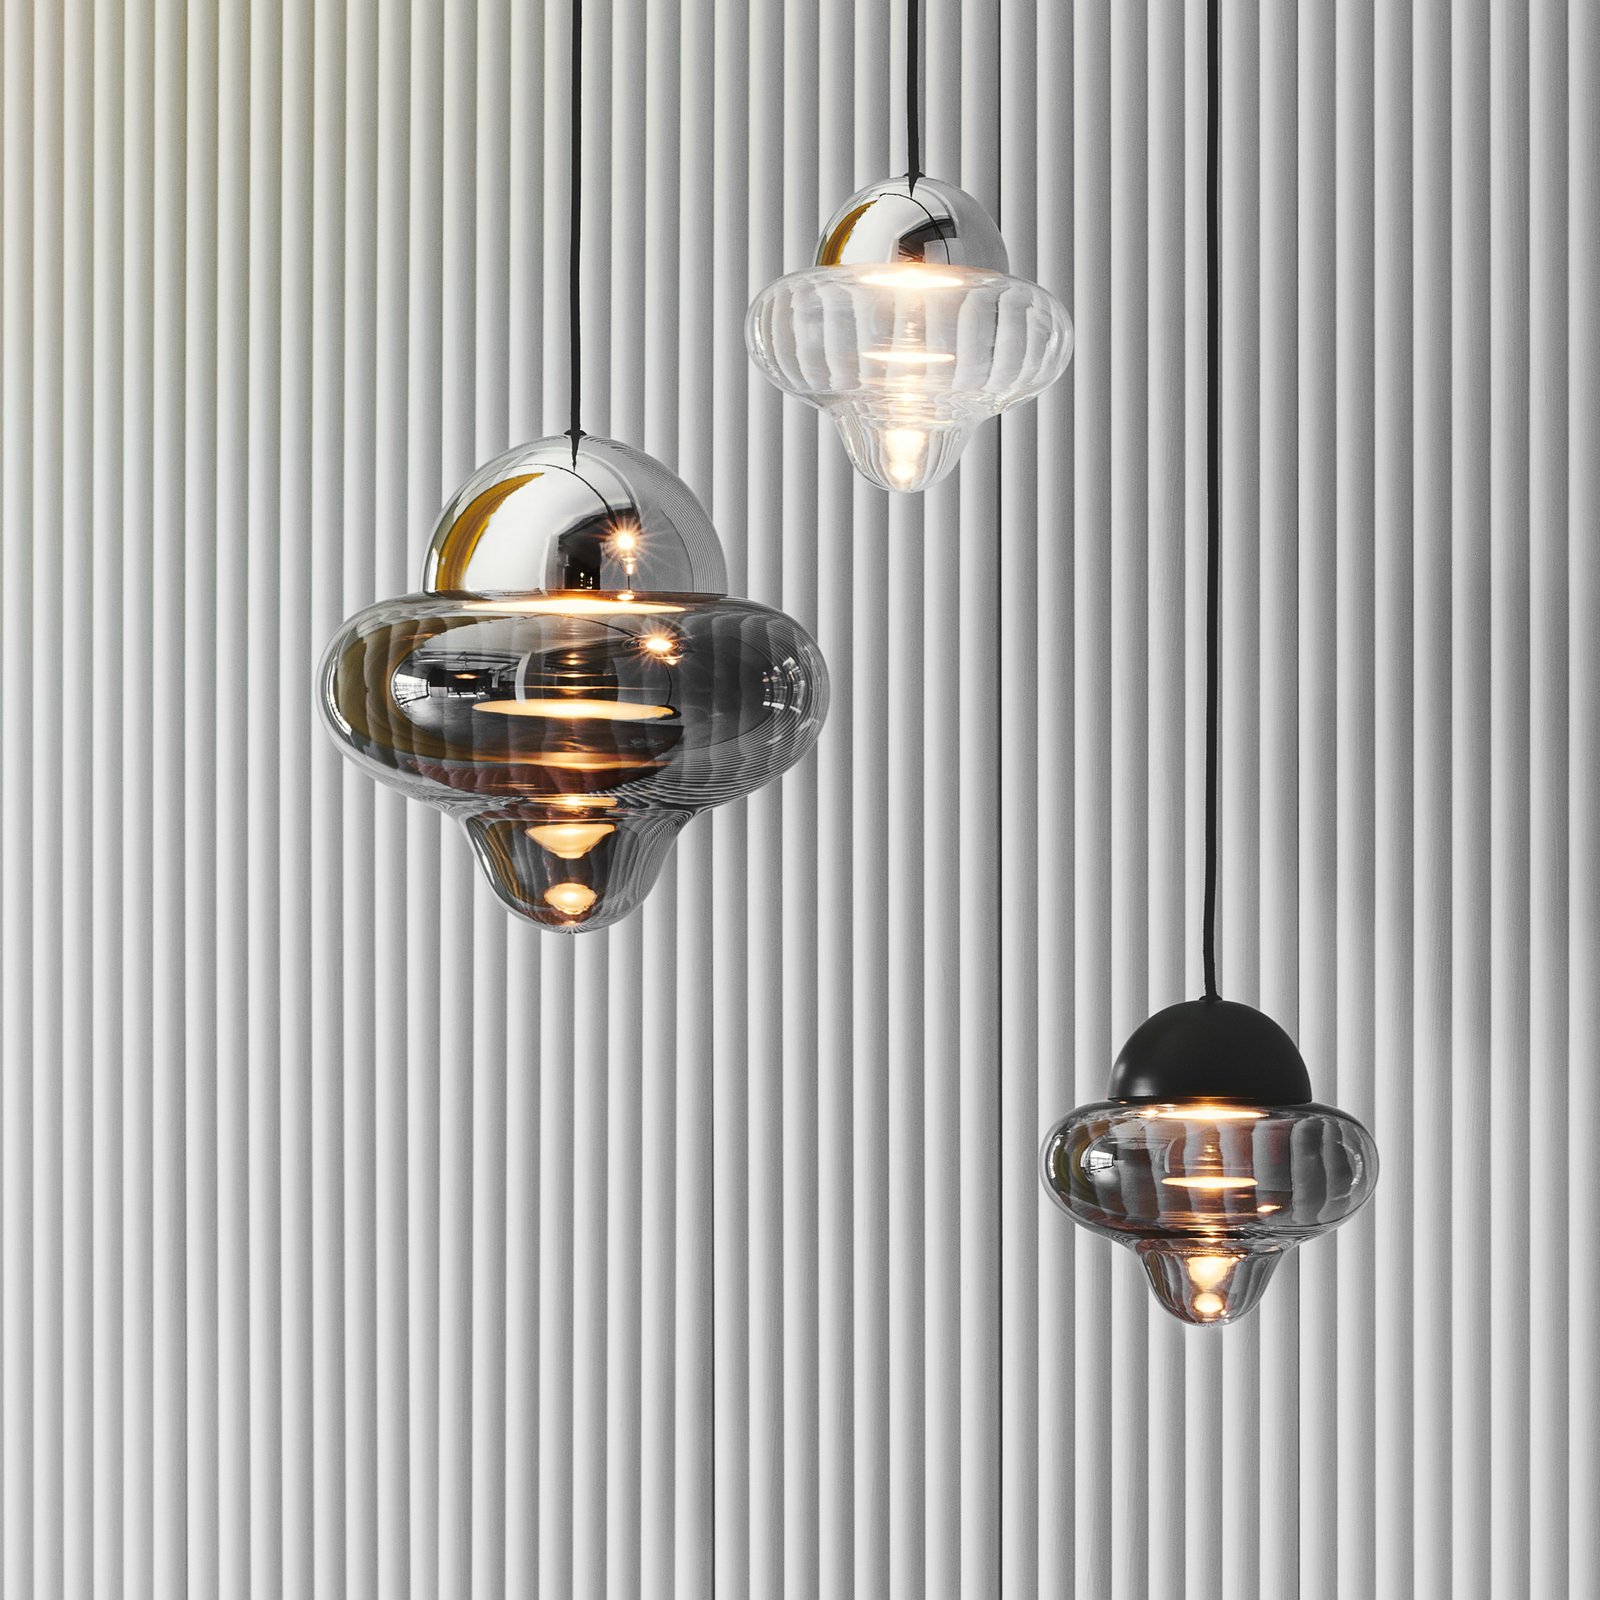 LED-Hängeleuchte Nutty, rauchgrau / chrom, Ø 18,5 cm, Glas